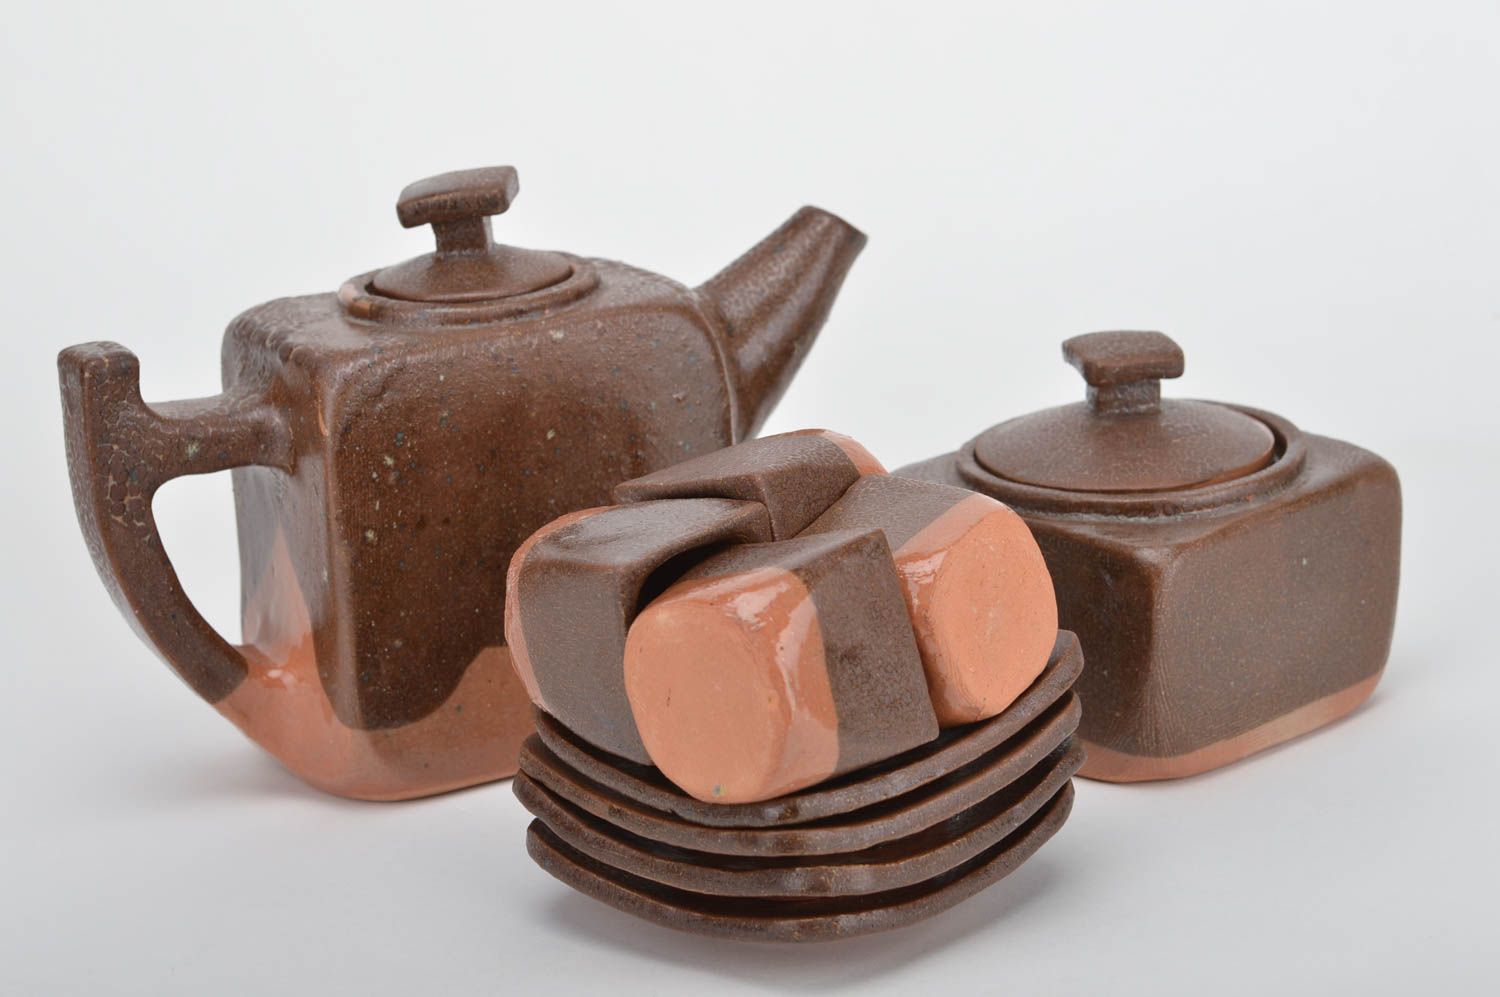 Juego de vajilla de cerámica hecha a mano menaje de cocina ideas de regalos foto 1